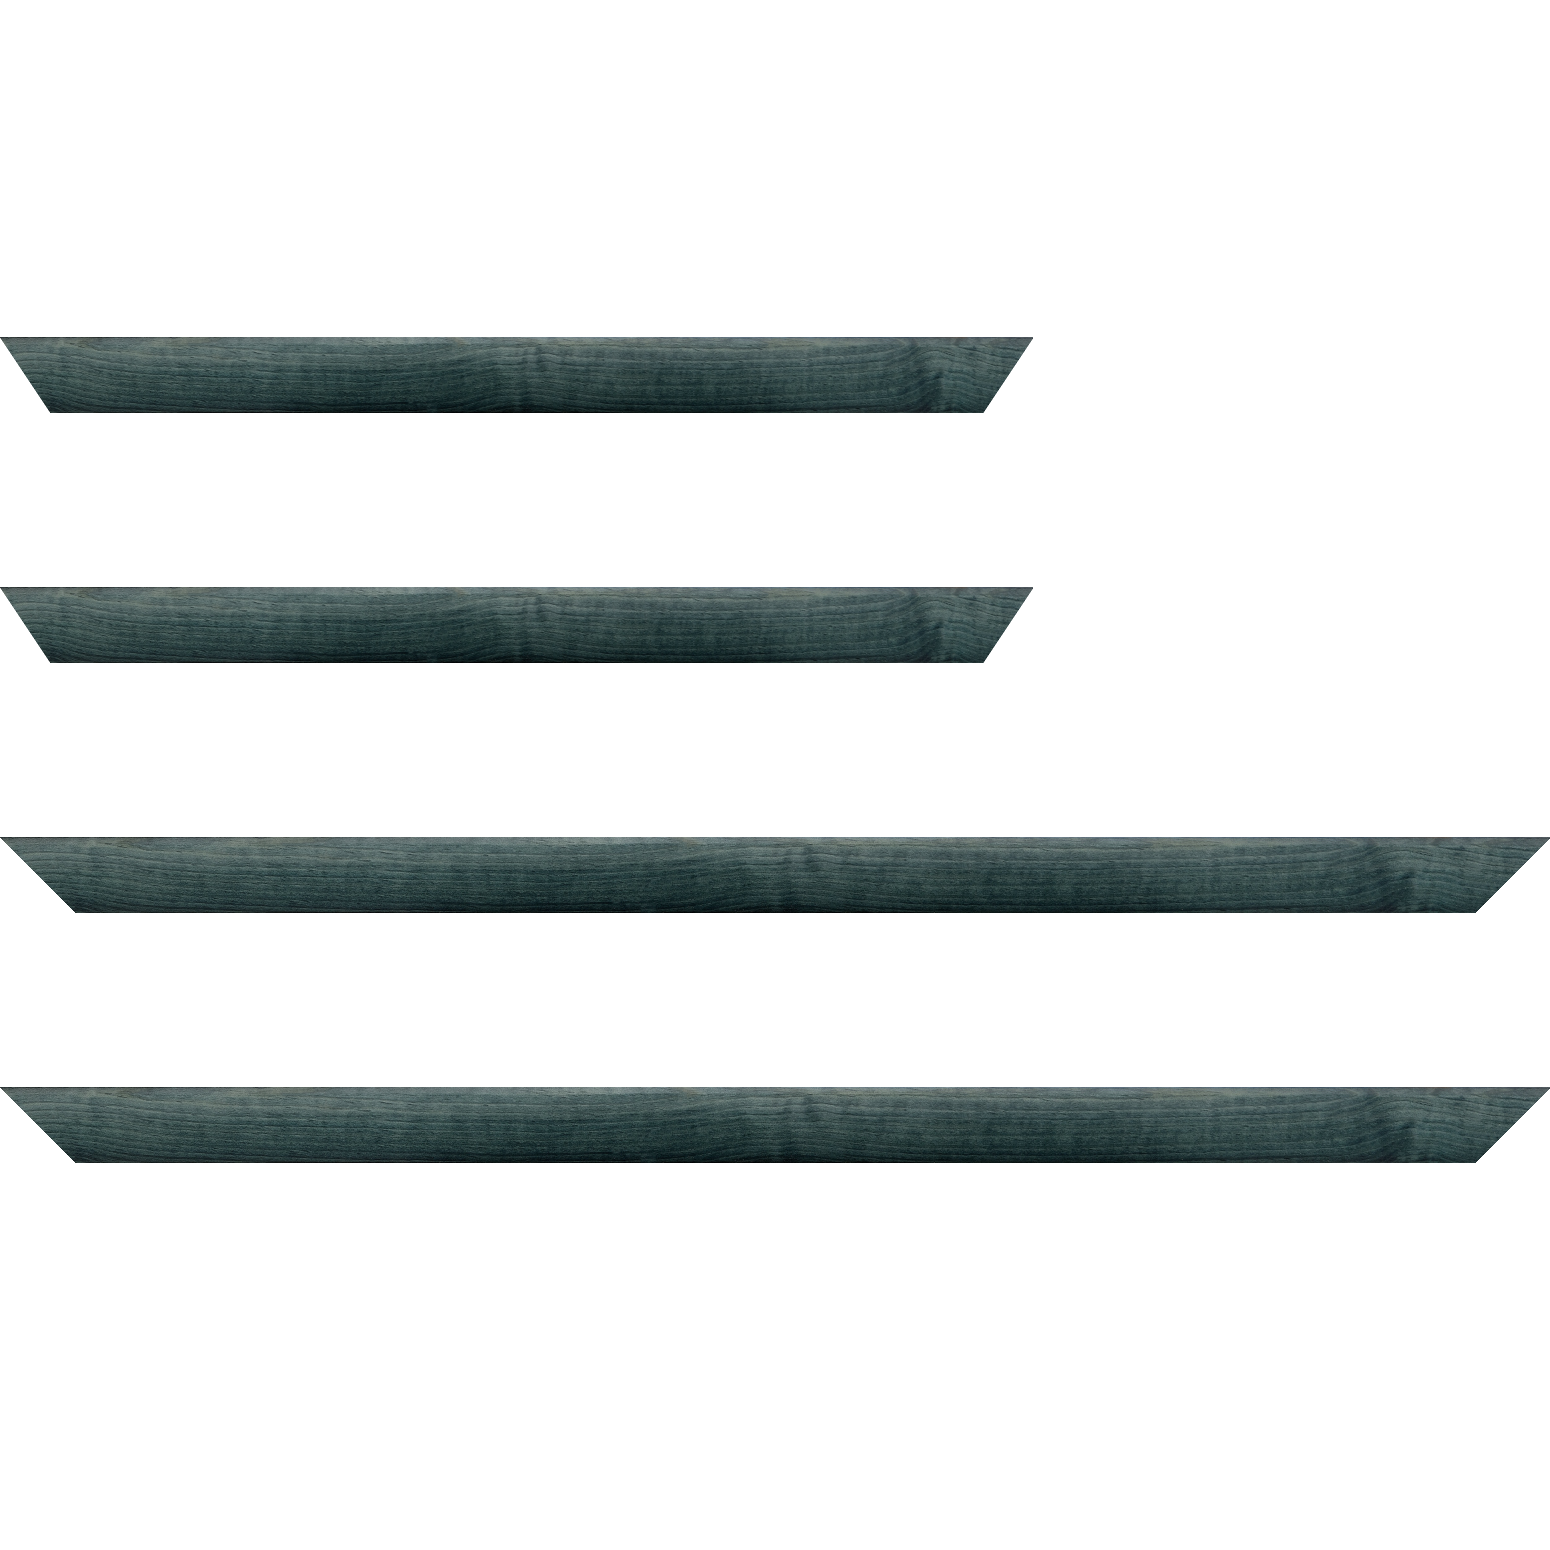 Baguette bois profil arrondi en pente plongeant largeur 2.4cm couleur bleu turquoise foncé finition vernis brillant,veine du bois  apparent (pin) , - 35x24